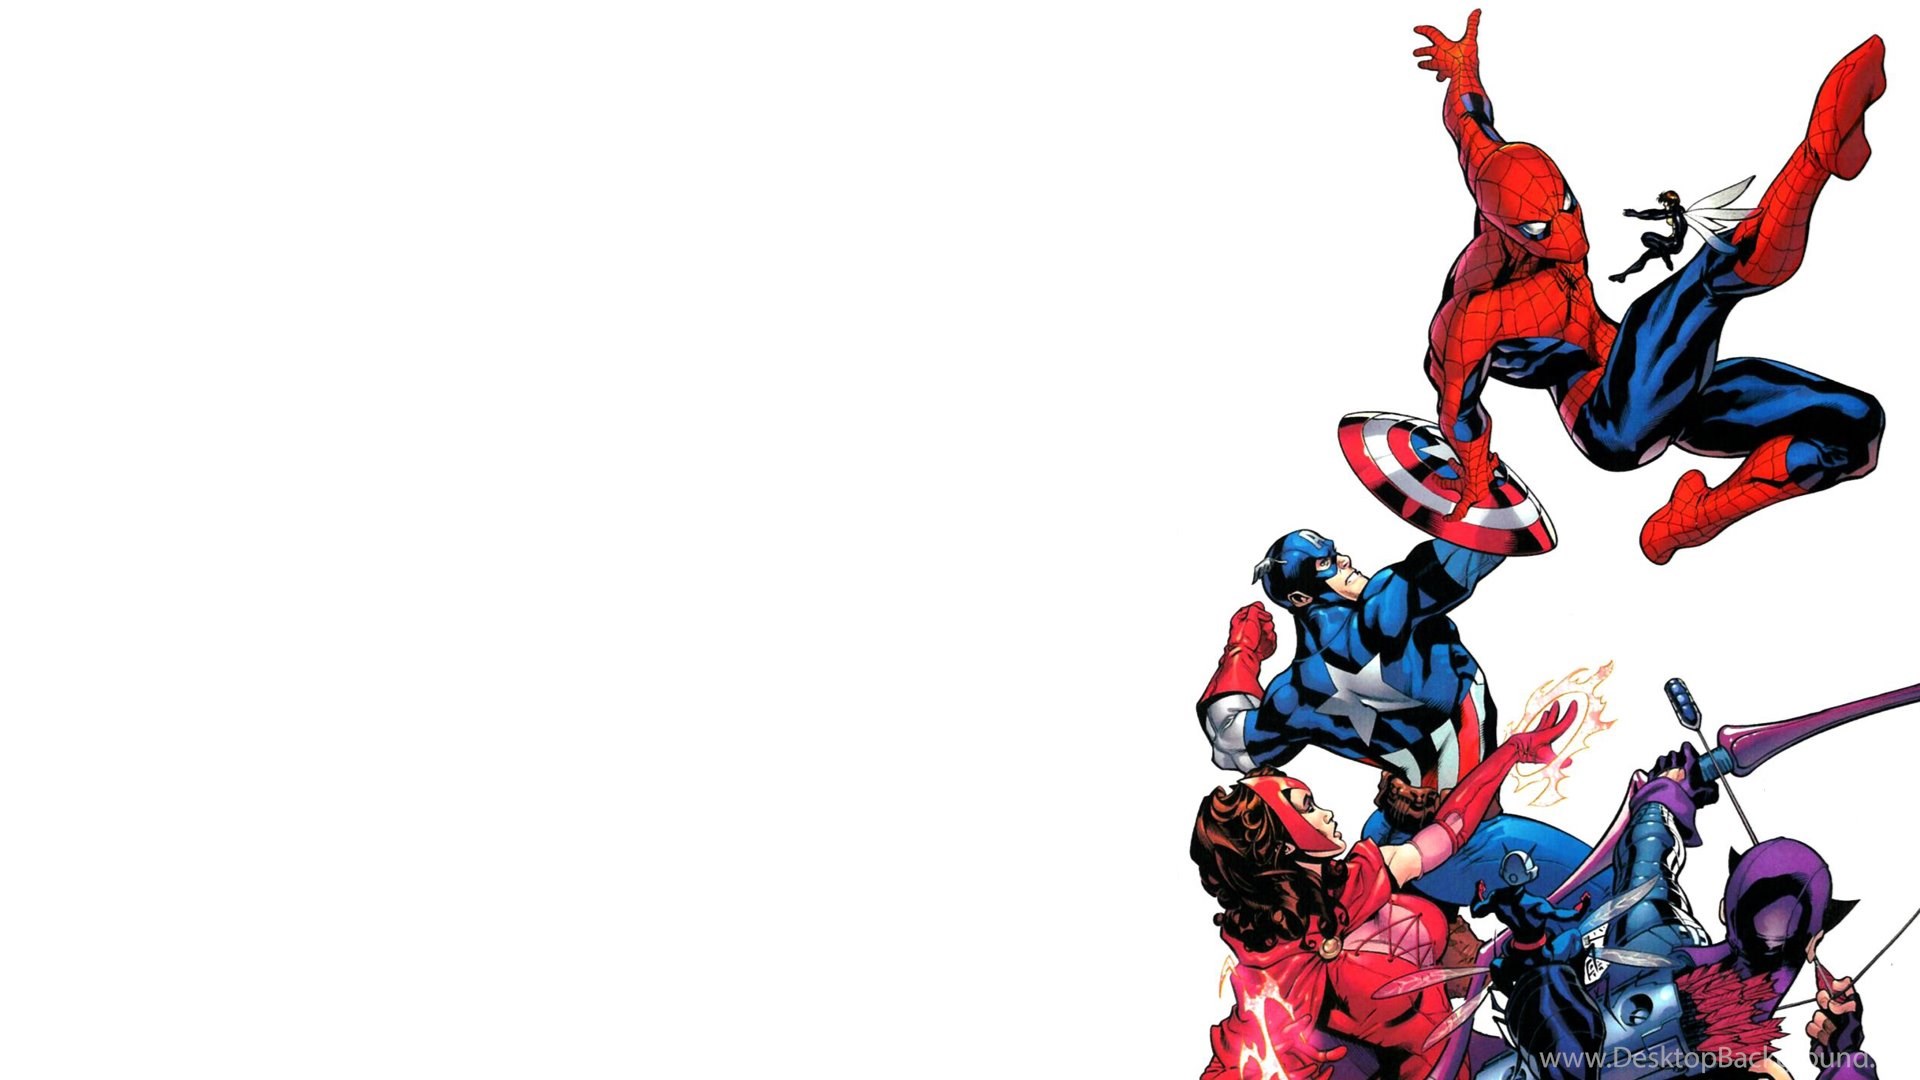 Bạn đang muốn tìm kiếm một hình nền Spider Man Captain America độ nét cao và miễn phí? Hãy tải xuống ngay bức hình nền này! Với bản vẽ tuyệt đẹp và đường nét sắc sảo, hình nền này sẽ khiến bạn phải trầm trồ với niềm đam mê của mình với siêu anh hùng Spider Man.